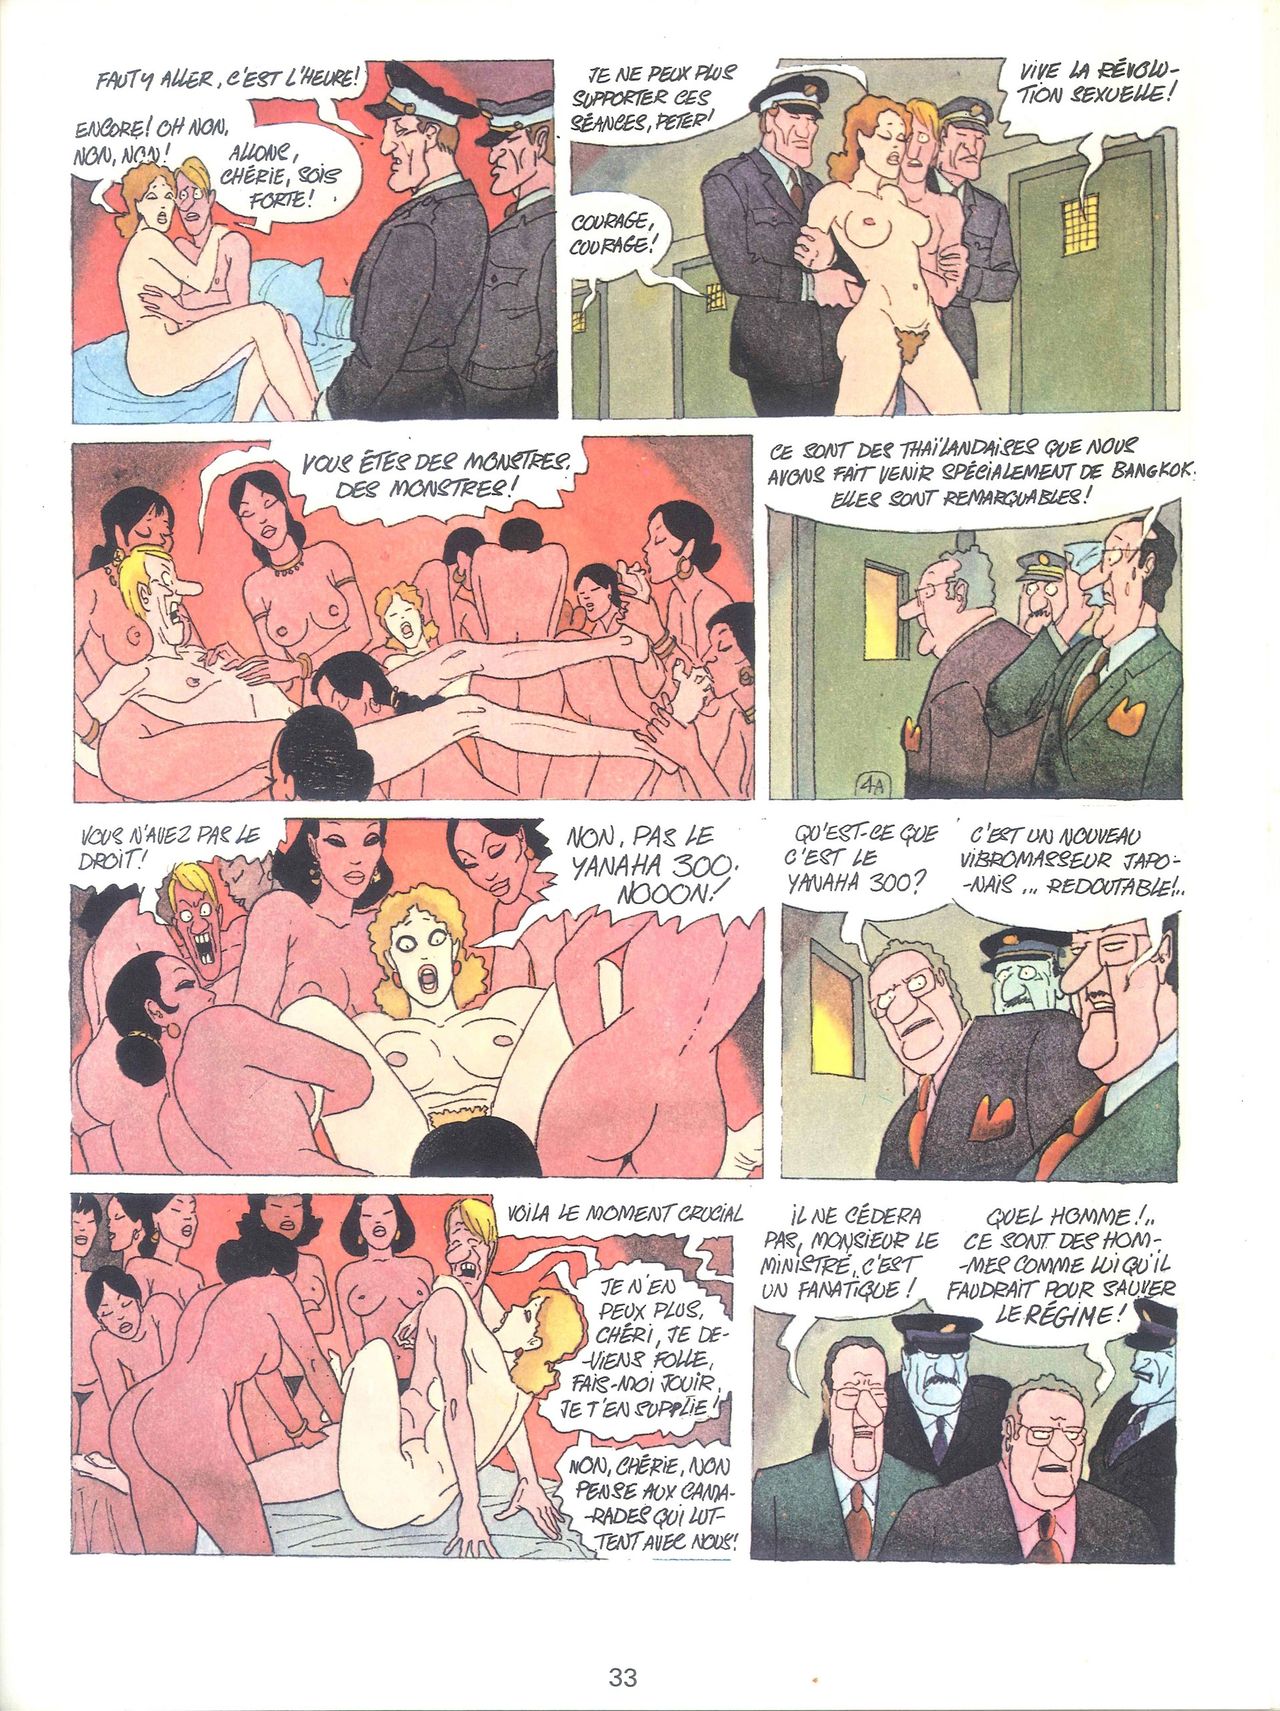 Les sextraordinaires aventures de Zizi et Peter Panpan numero d'image 35